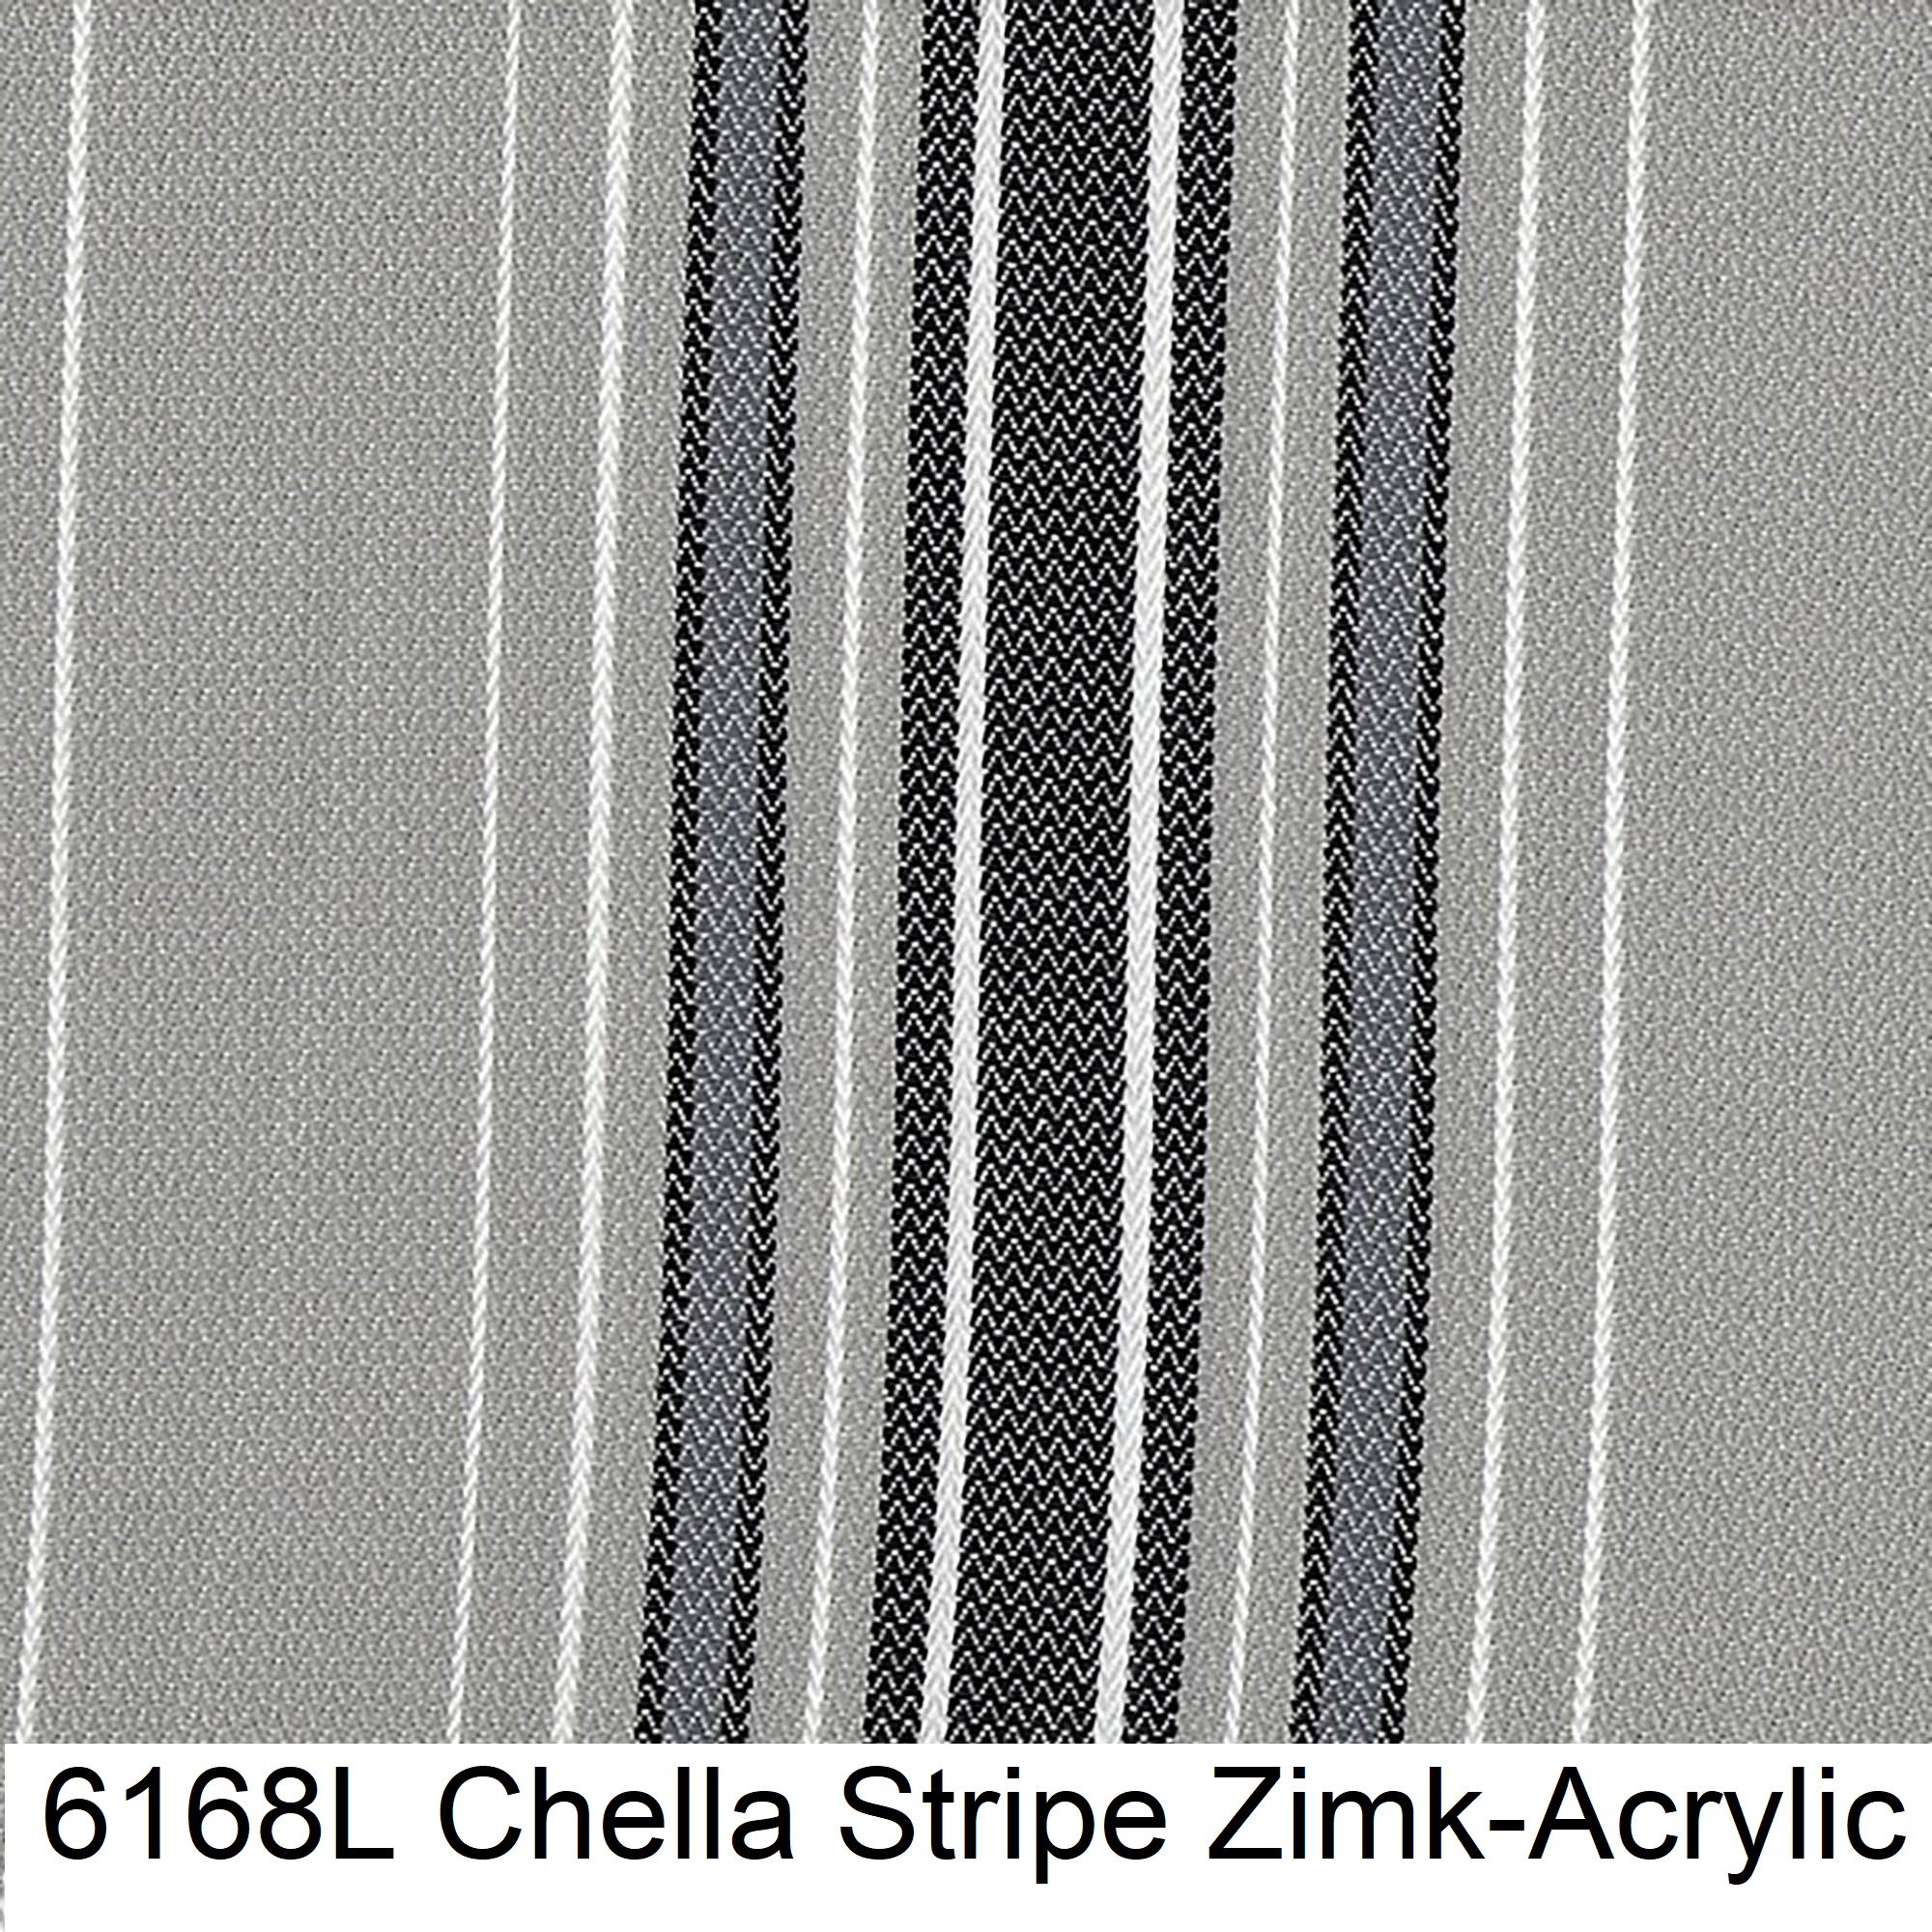 6168L Chella Stripe Zimk-Acrylic